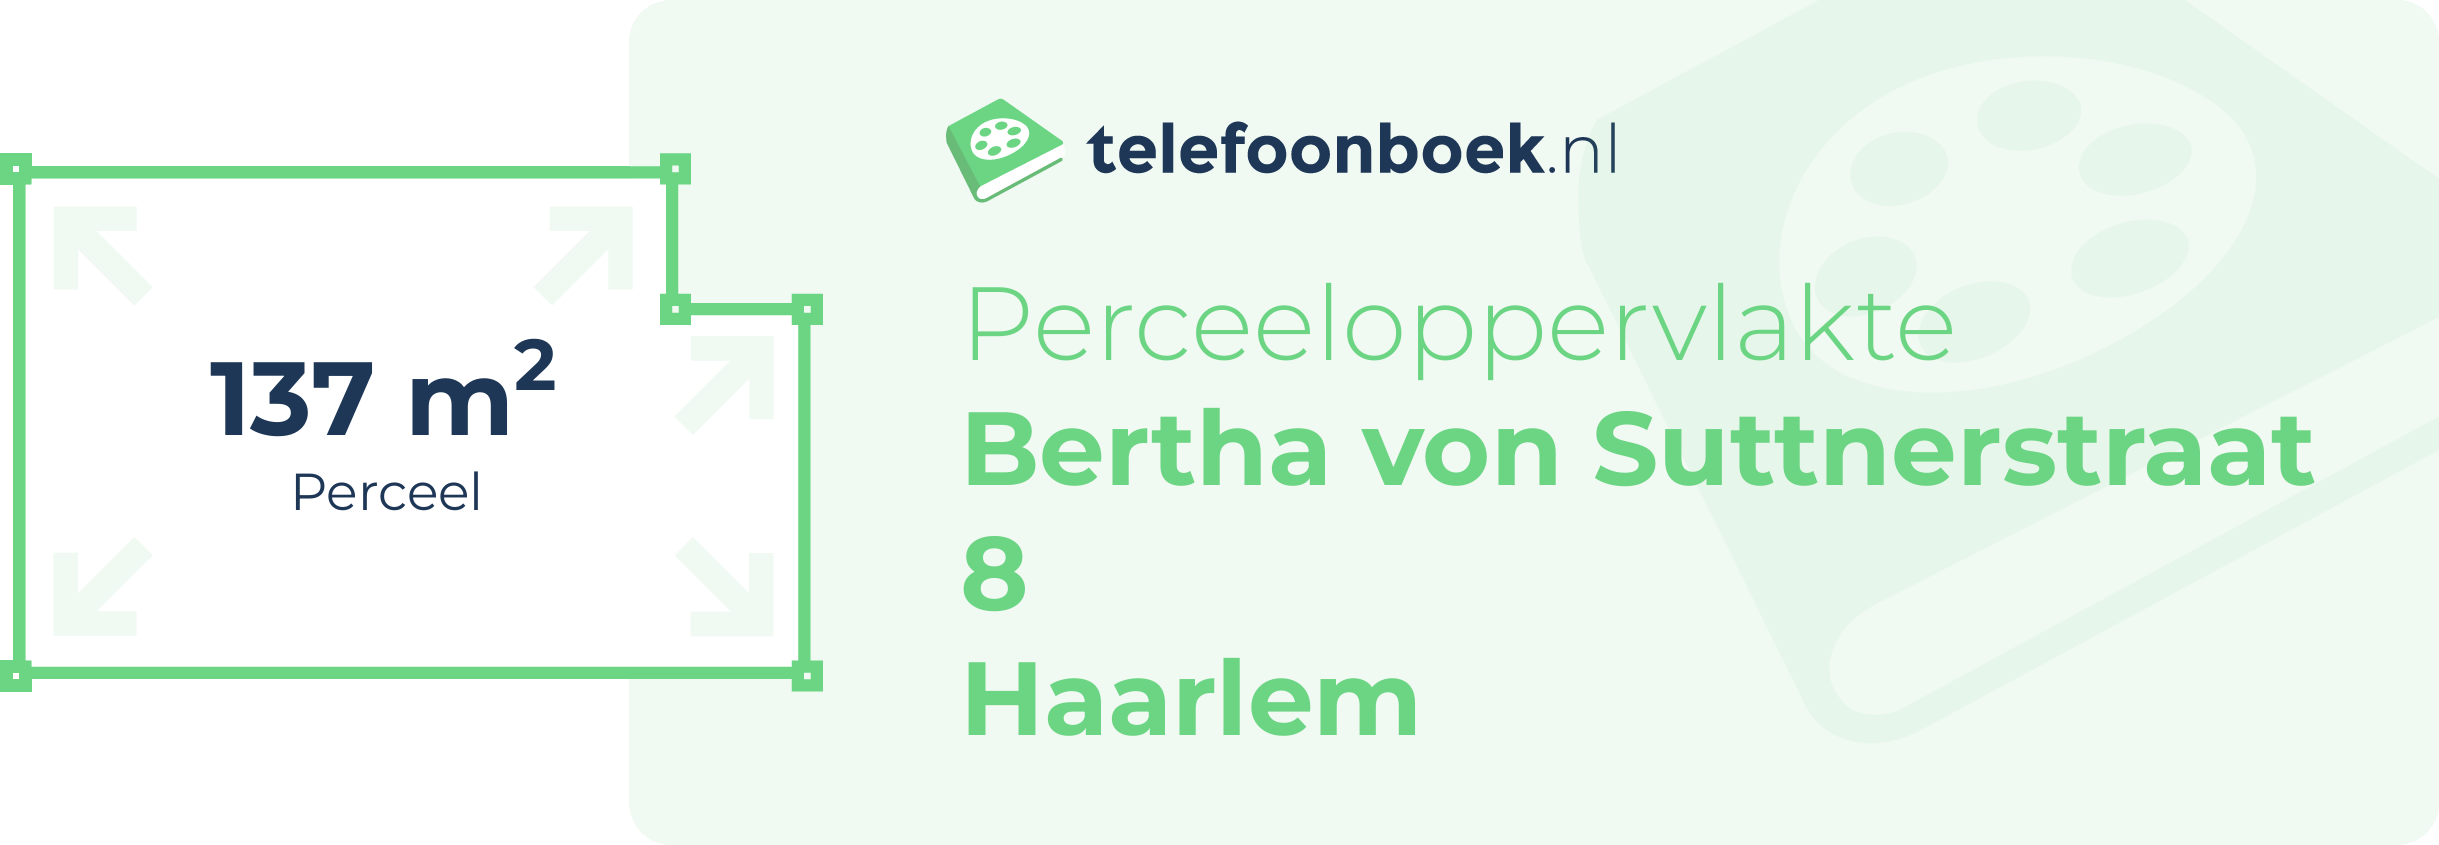 Perceeloppervlakte Bertha Von Suttnerstraat 8 Haarlem